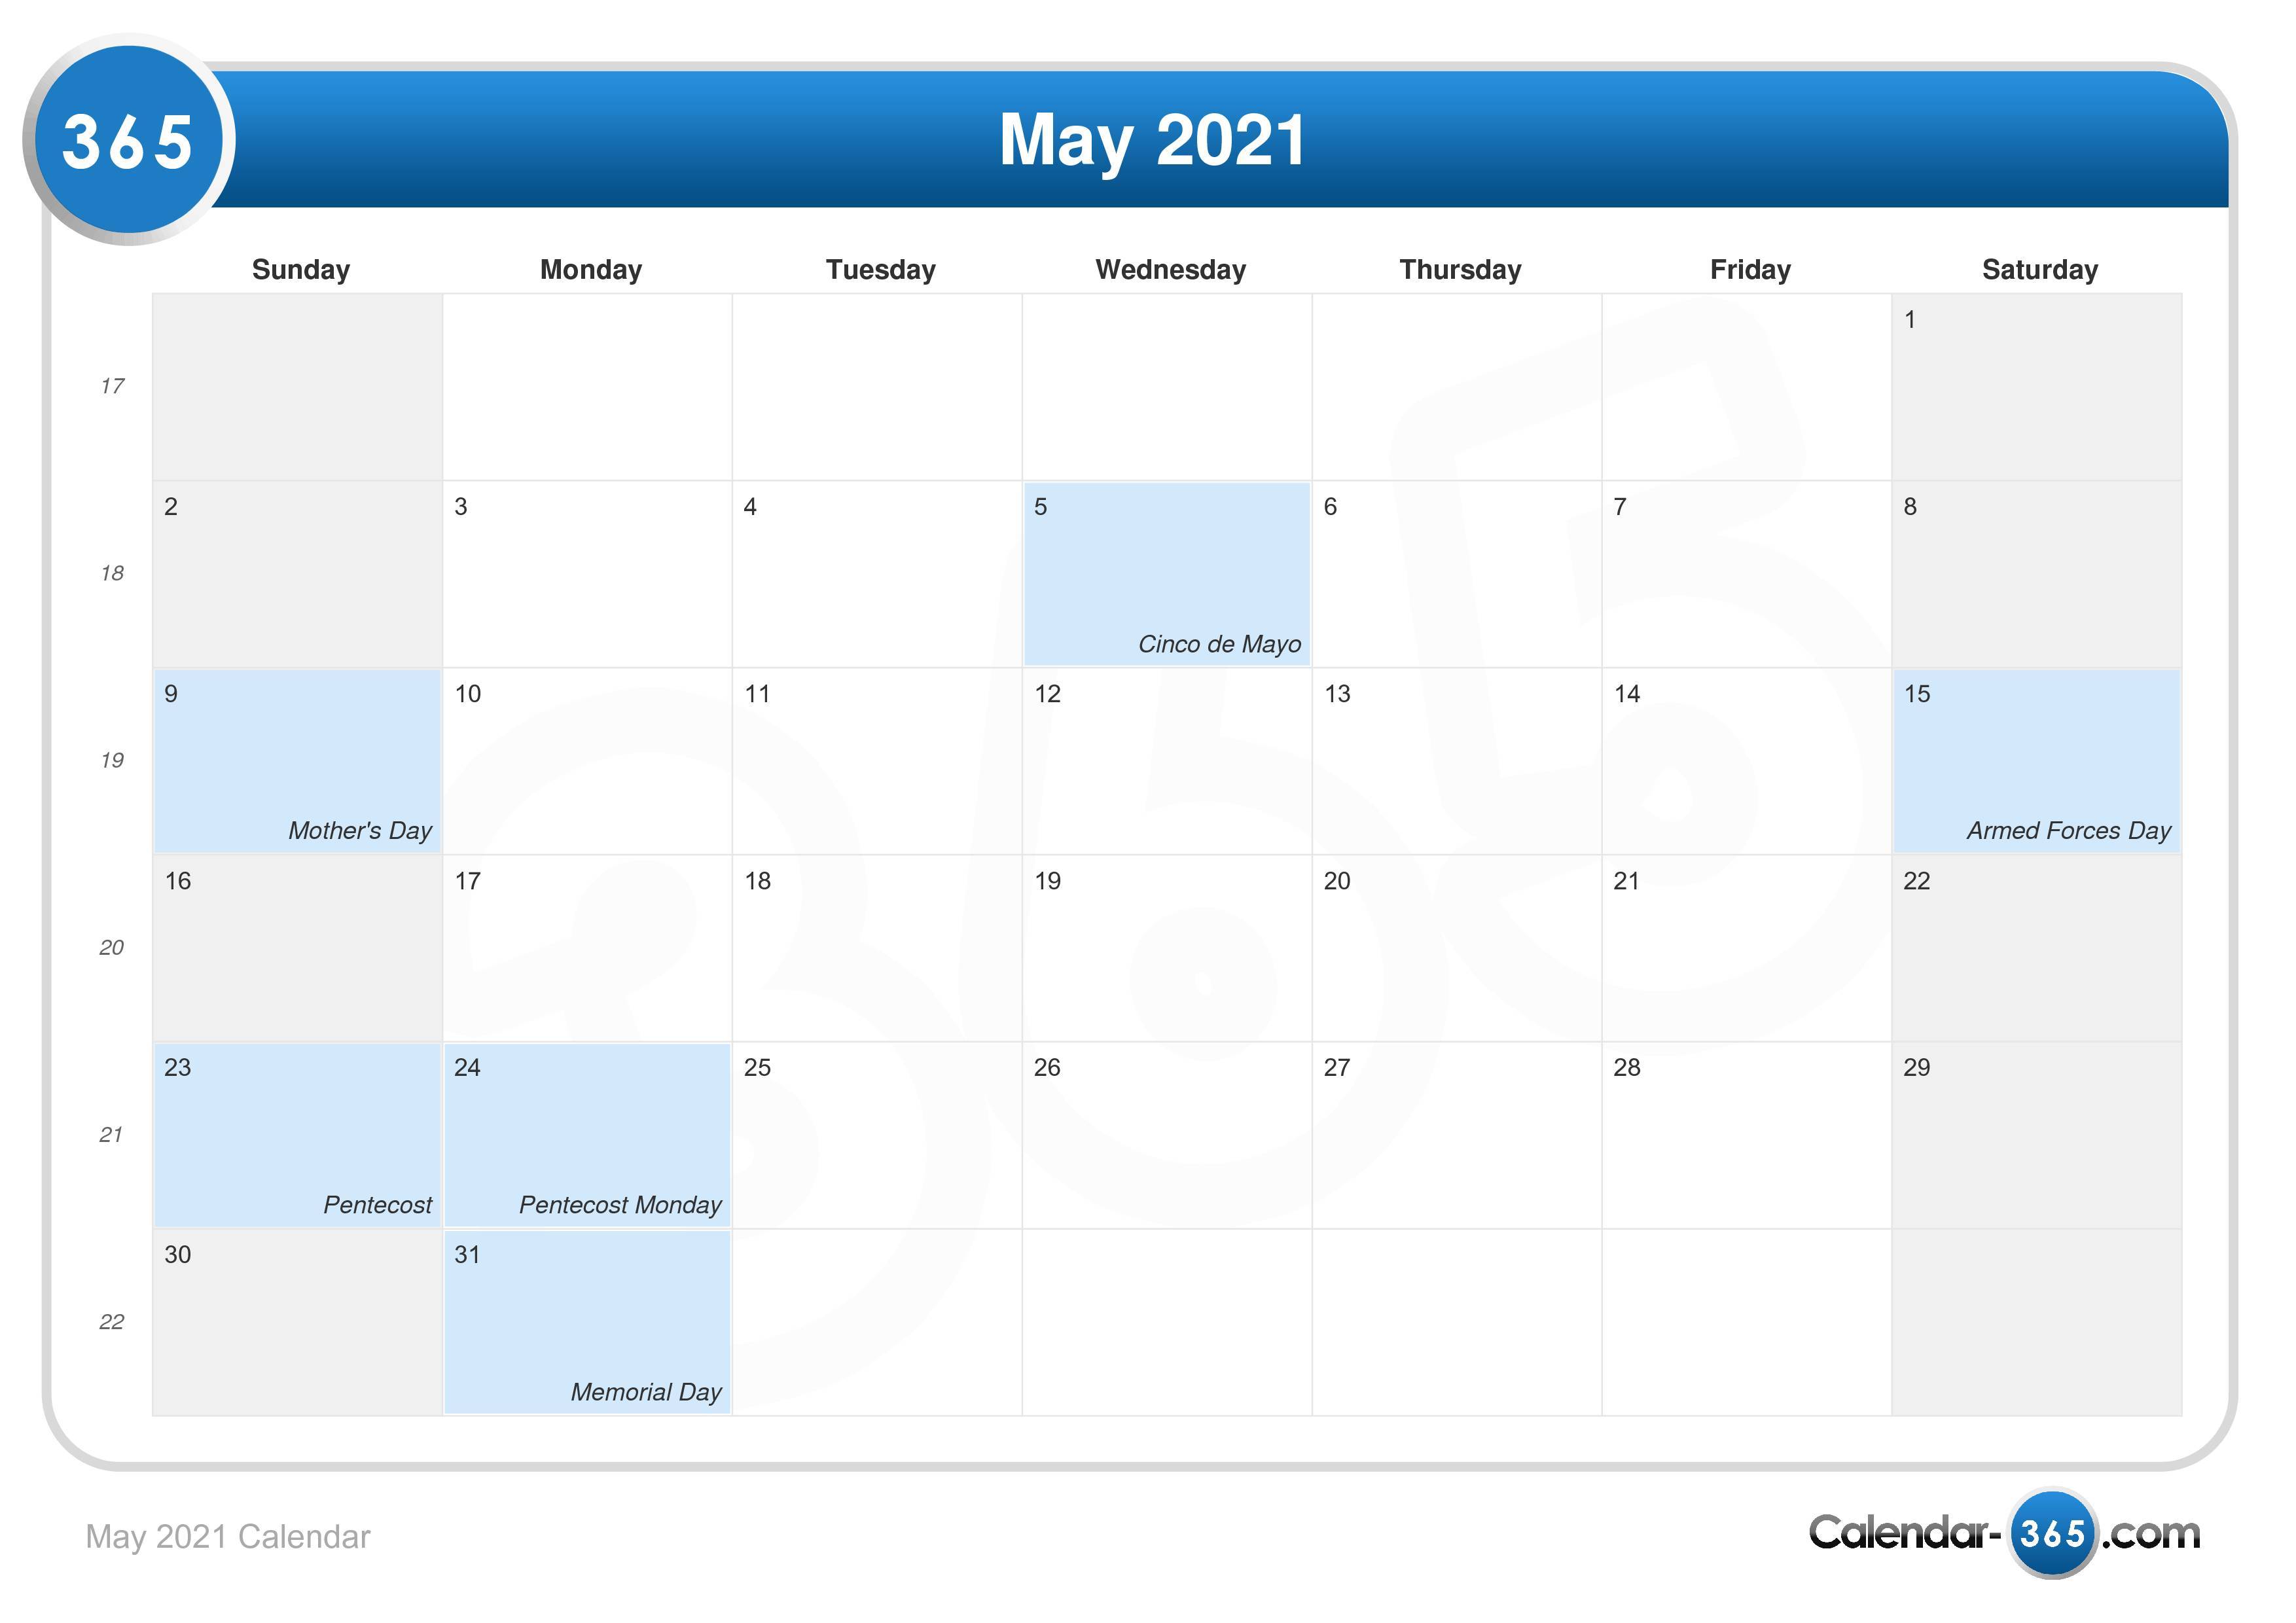 show me may 2021 calendar May 2021 Calendar show me may 2021 calendar